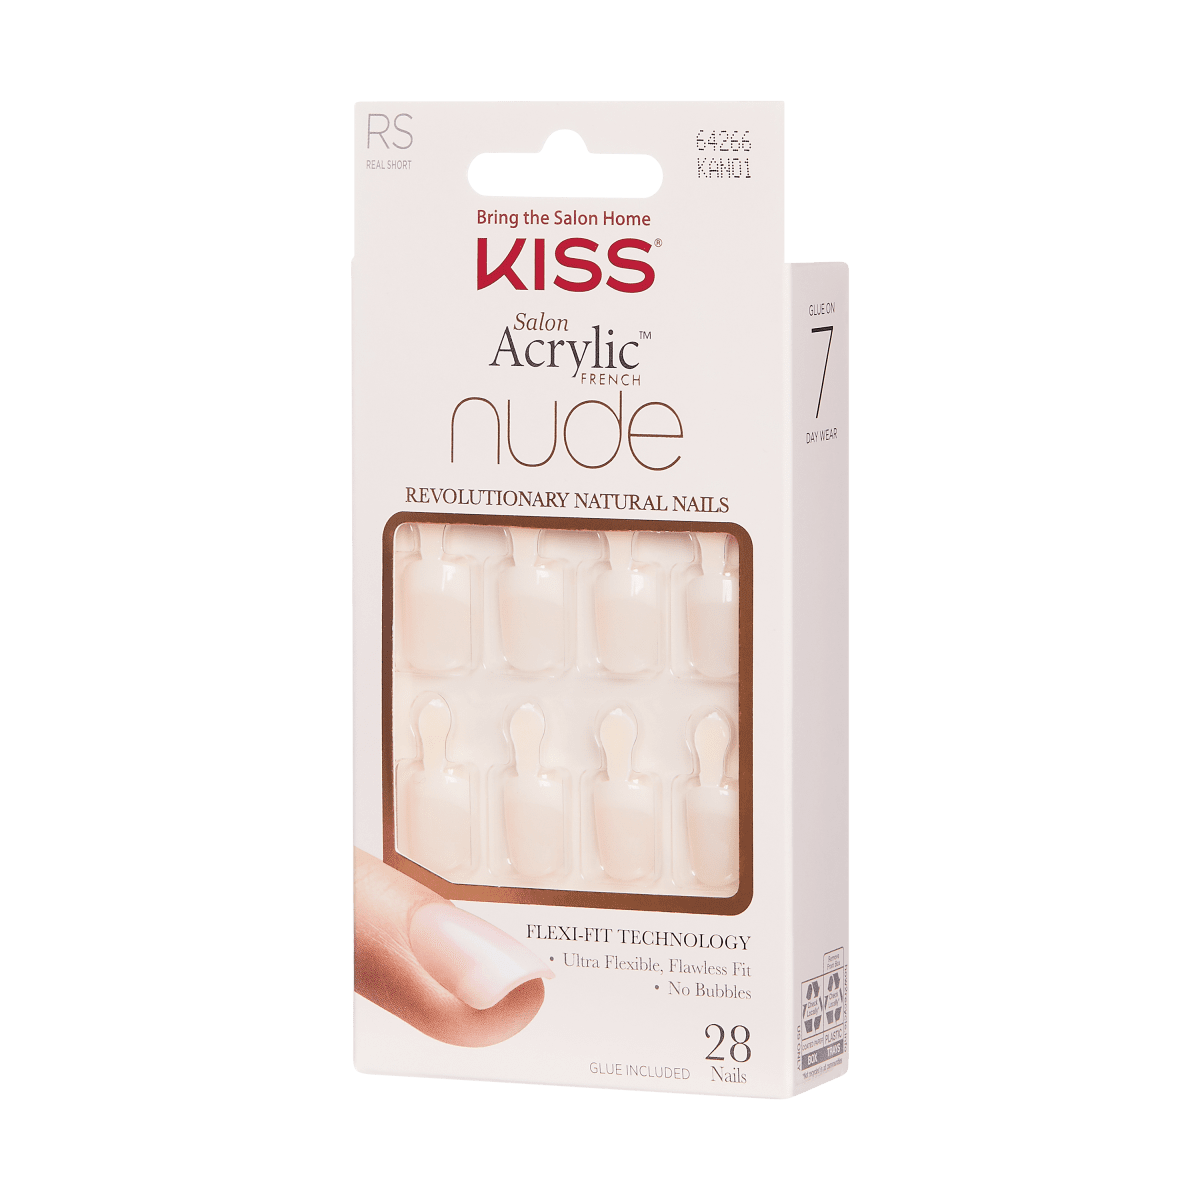 KISS Salon Acrylic Natural Nails - Breathtaking